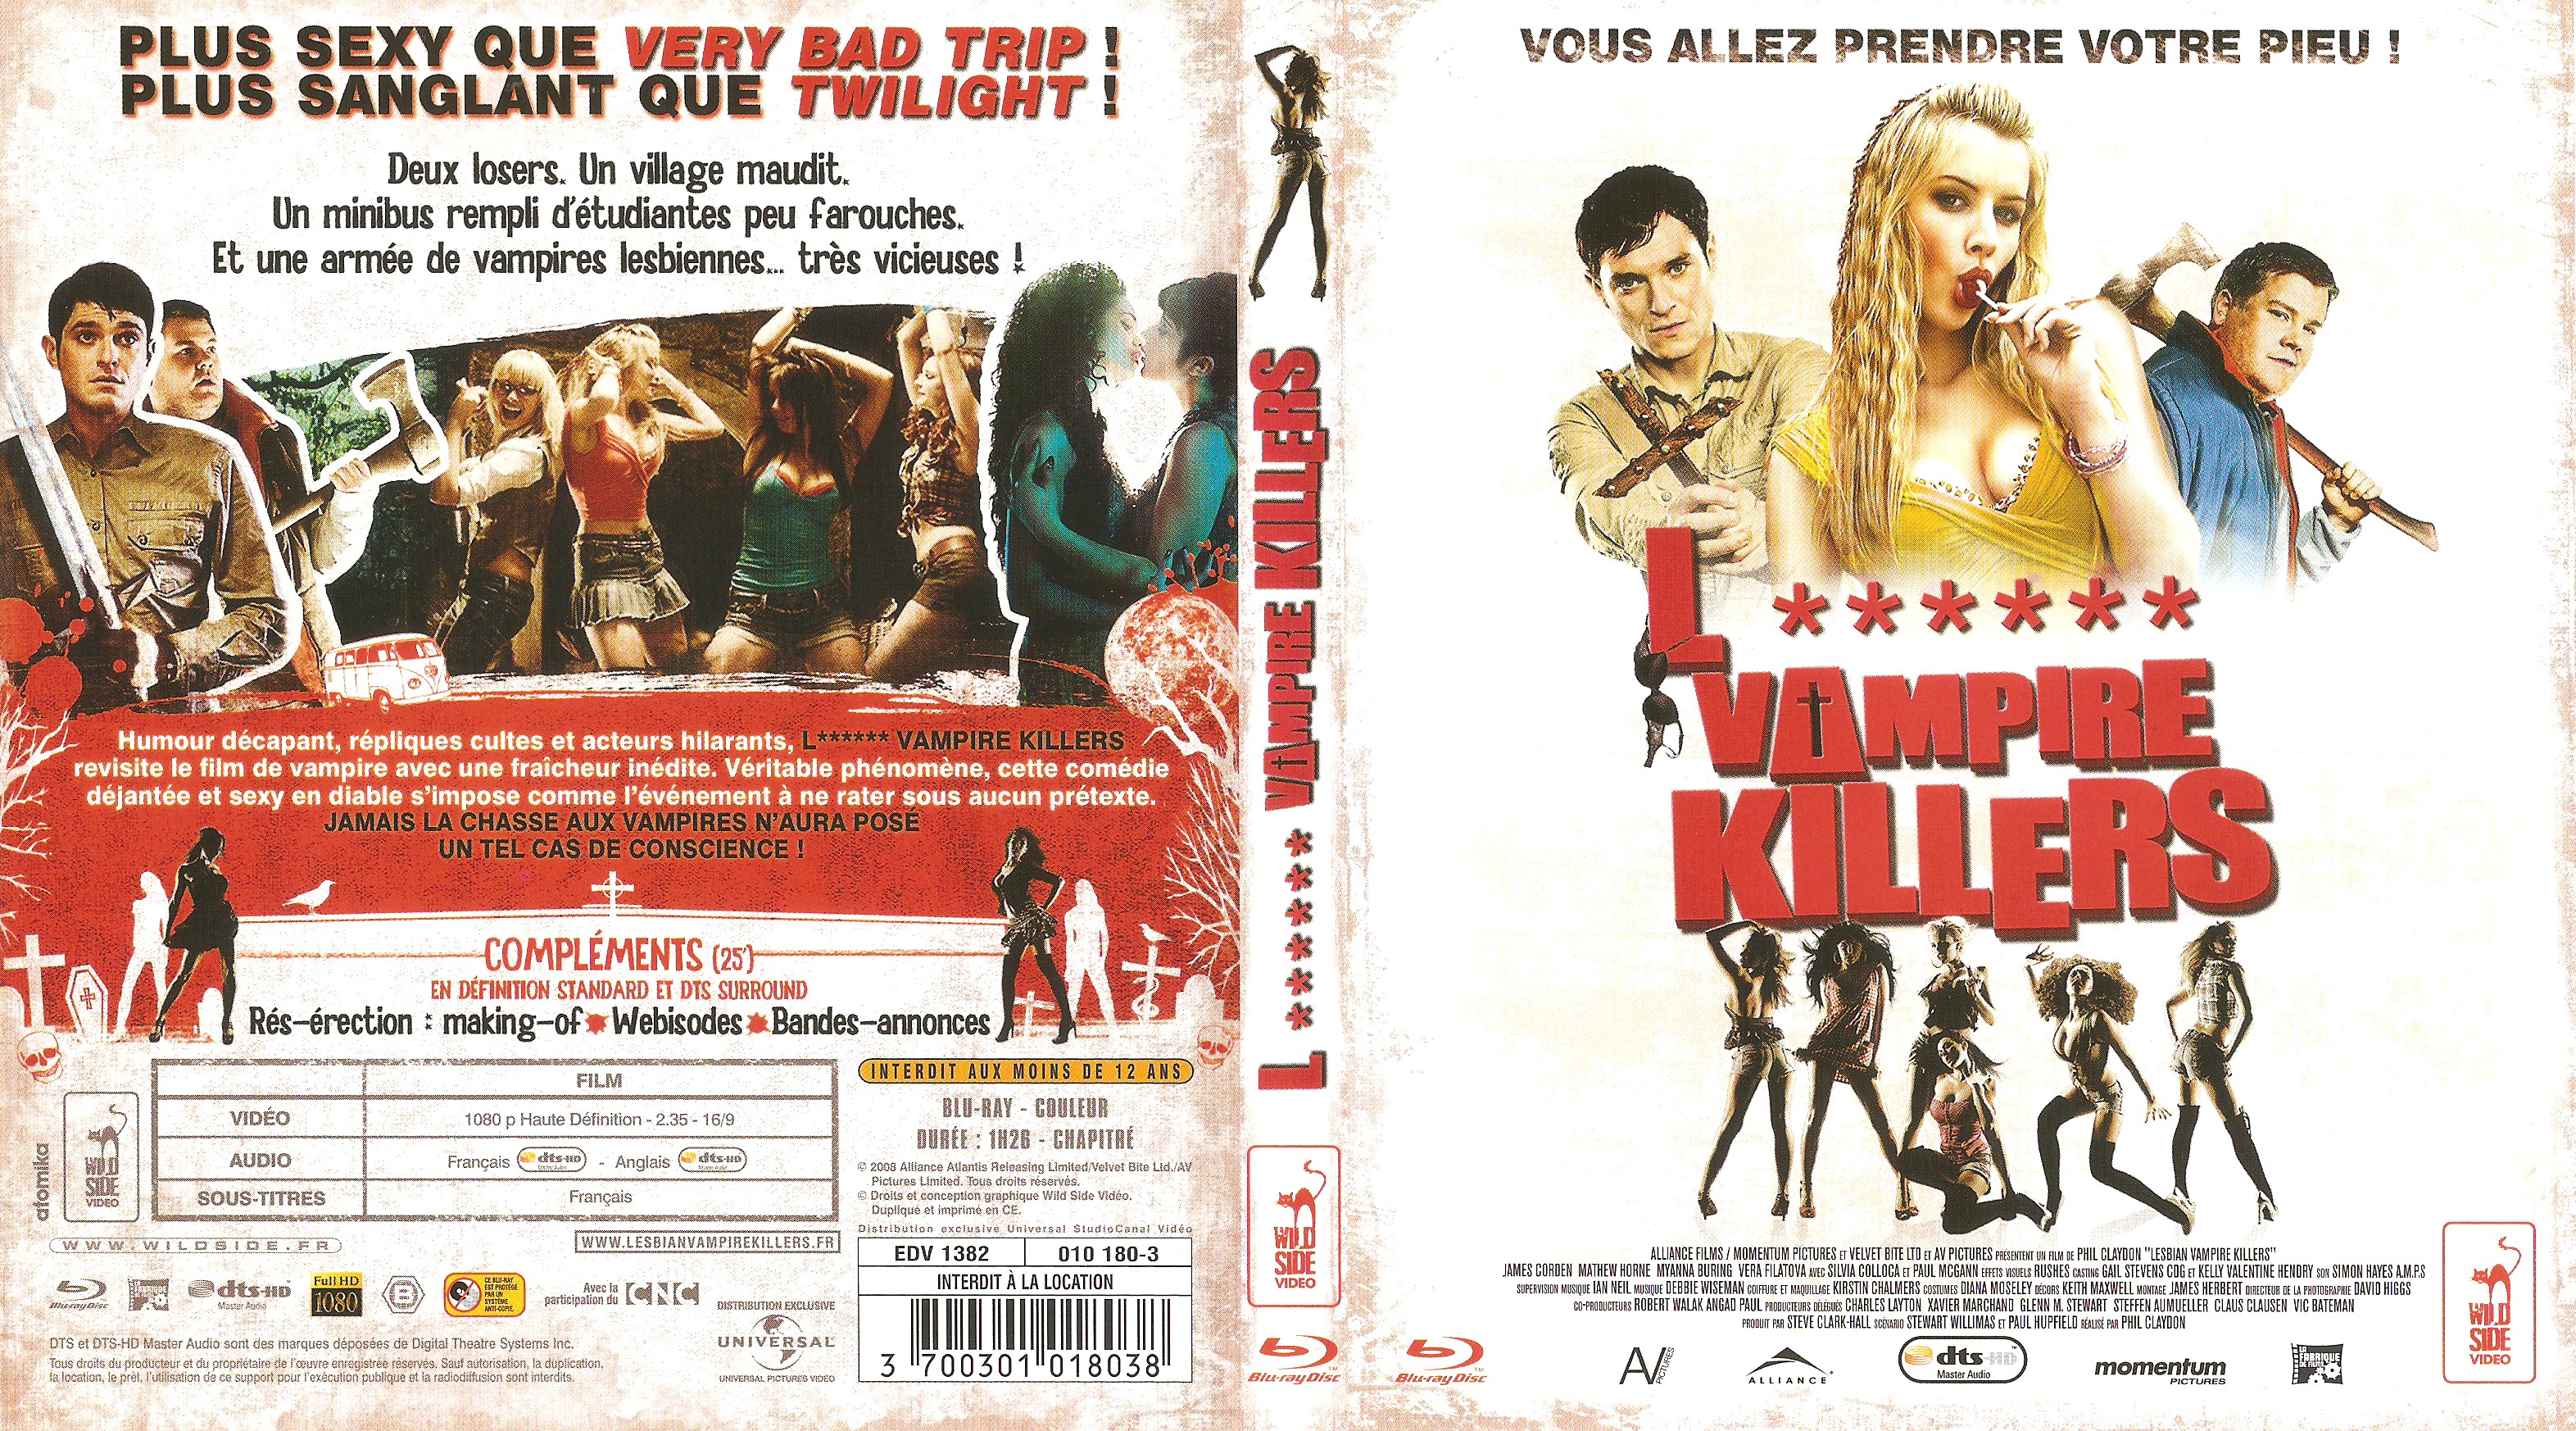 Jaquette DVD Lesbian vampire killers (BLU-RAY)